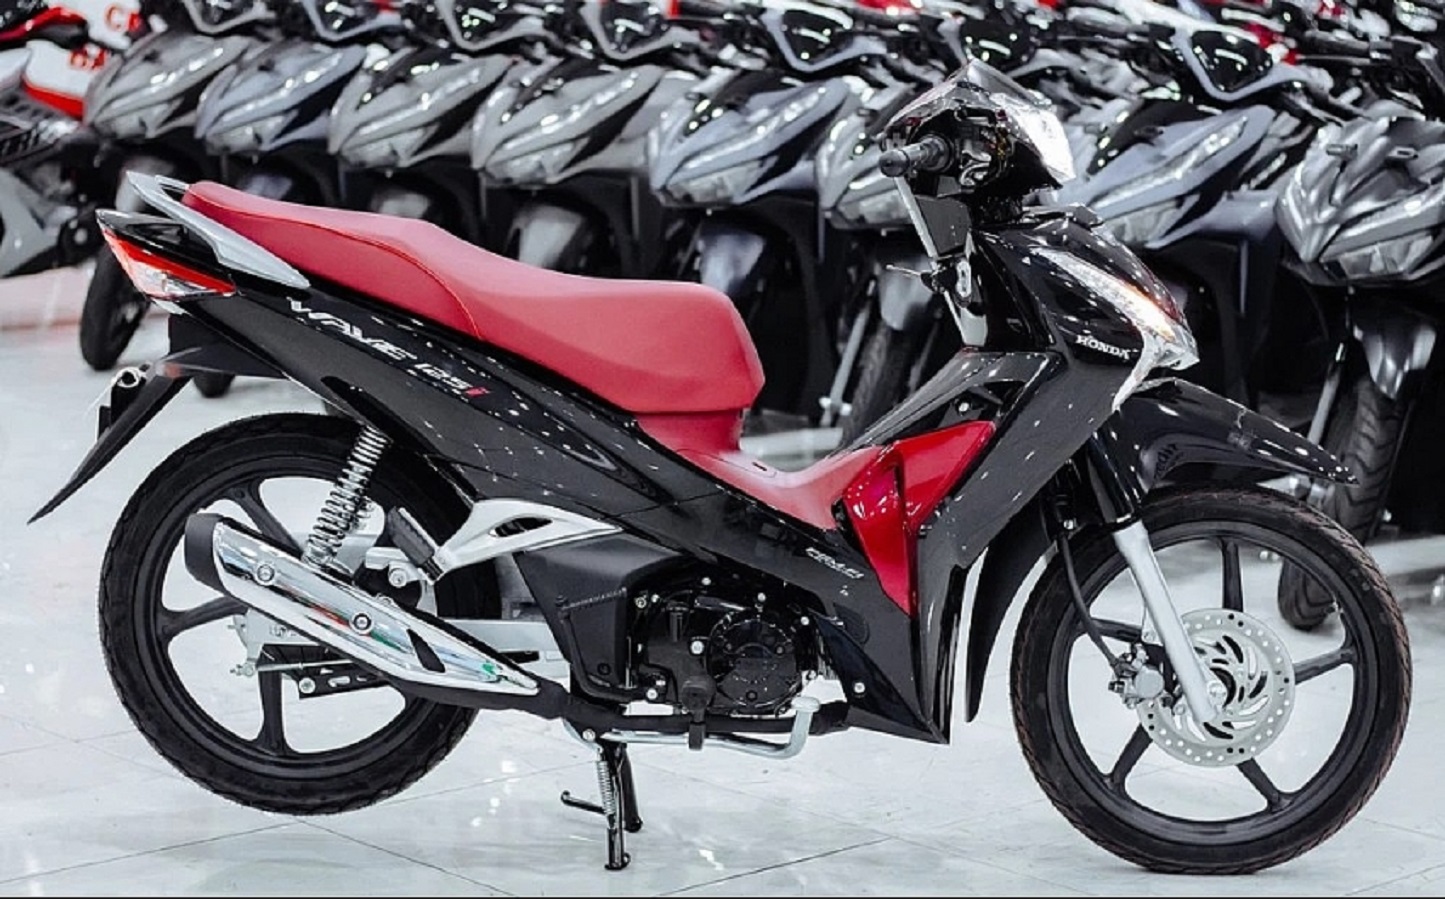 Giá bán Honda Wave 125i nhập từ Thái Lan lên tới gần 100 triệu đồng